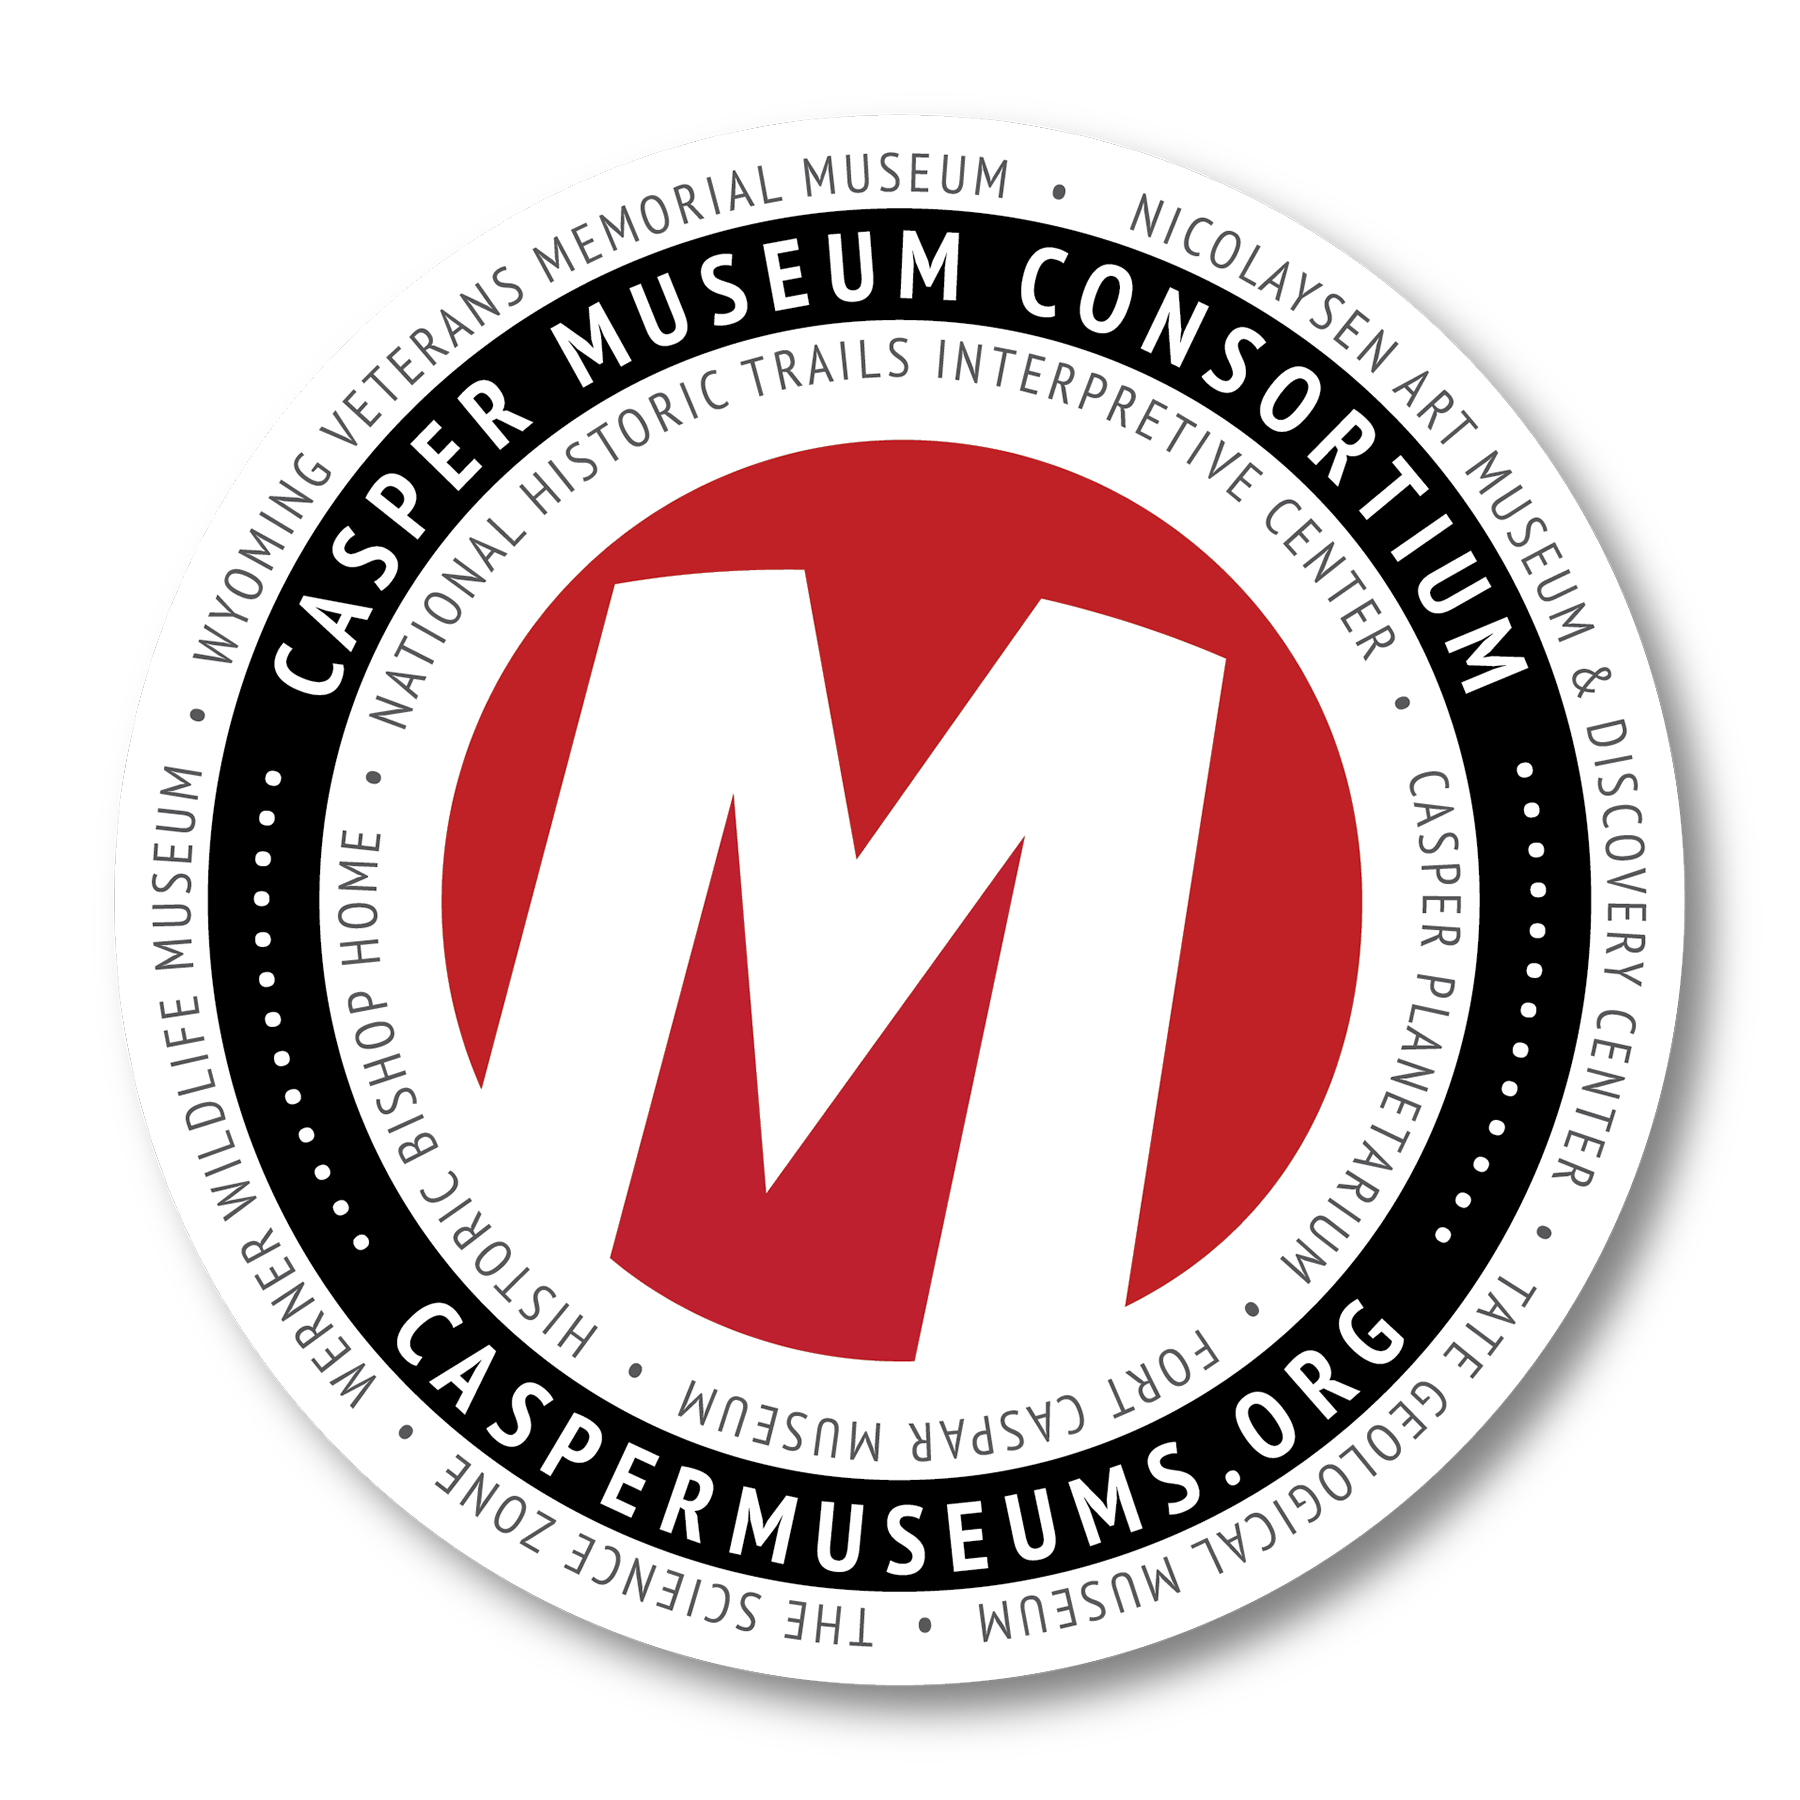 casper museum consortium decal